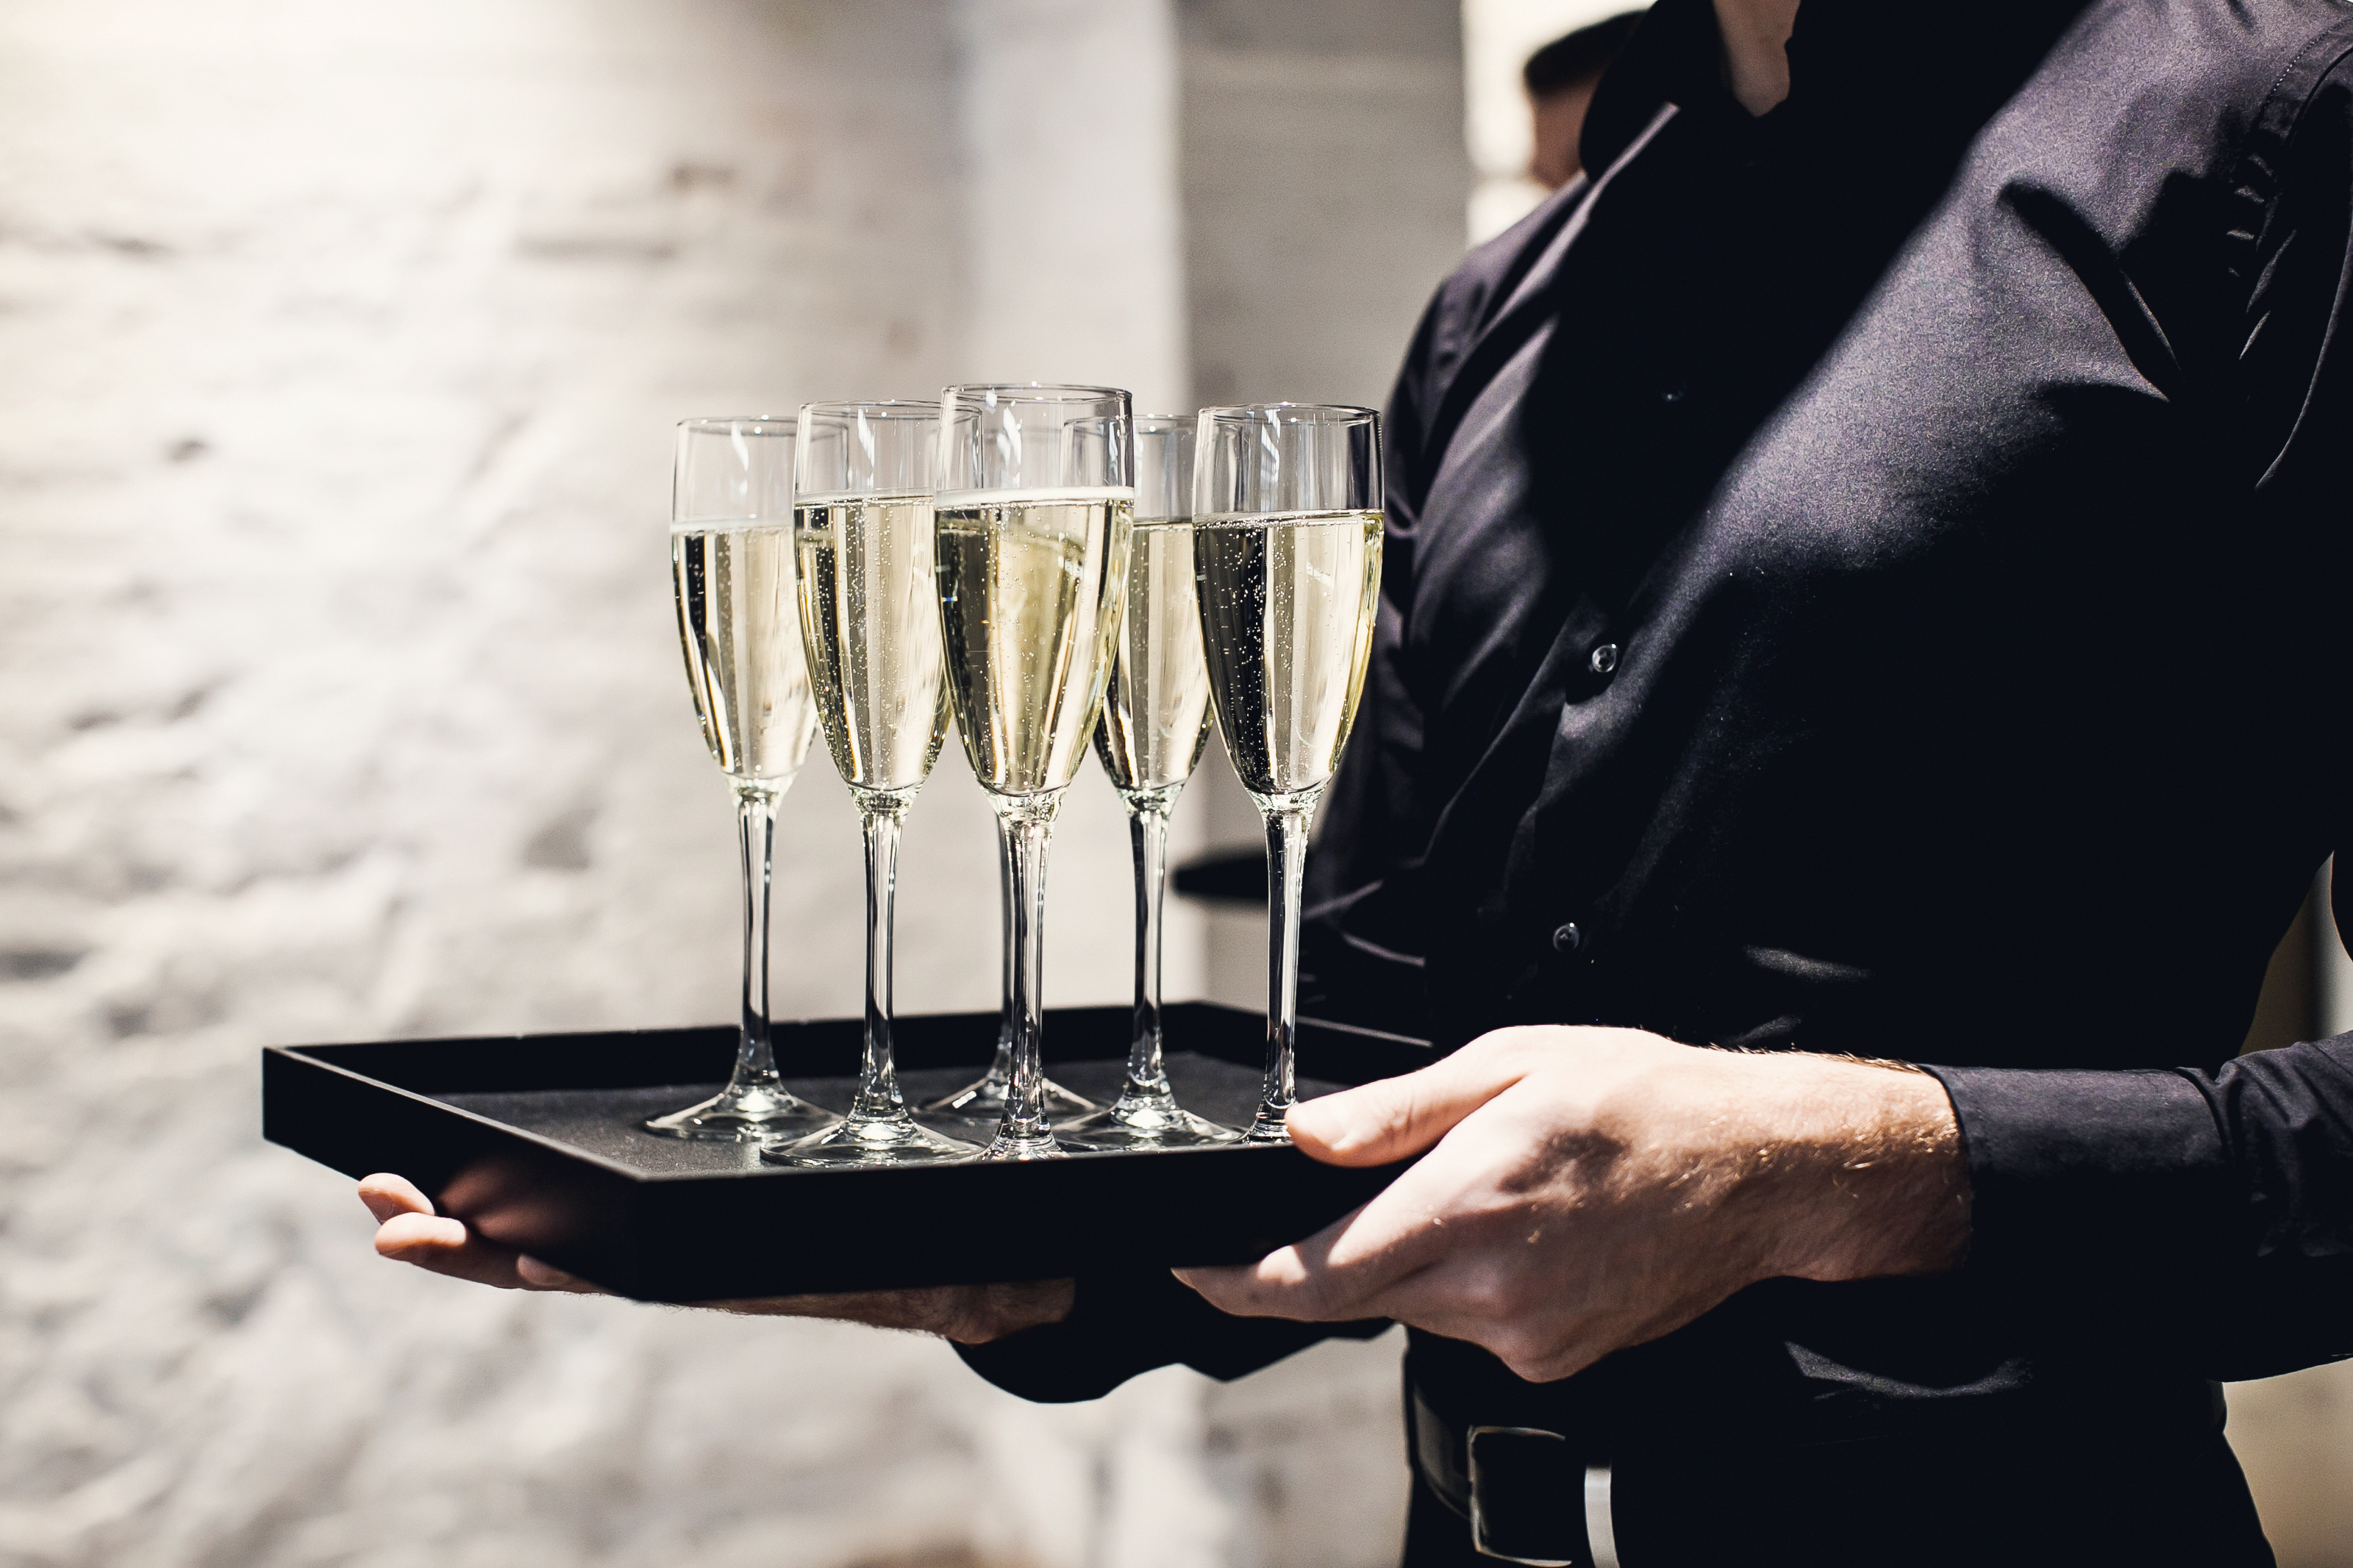 Un camarero sostiene copas con champán servido en una bandeja. | Fuente: Shutterstock